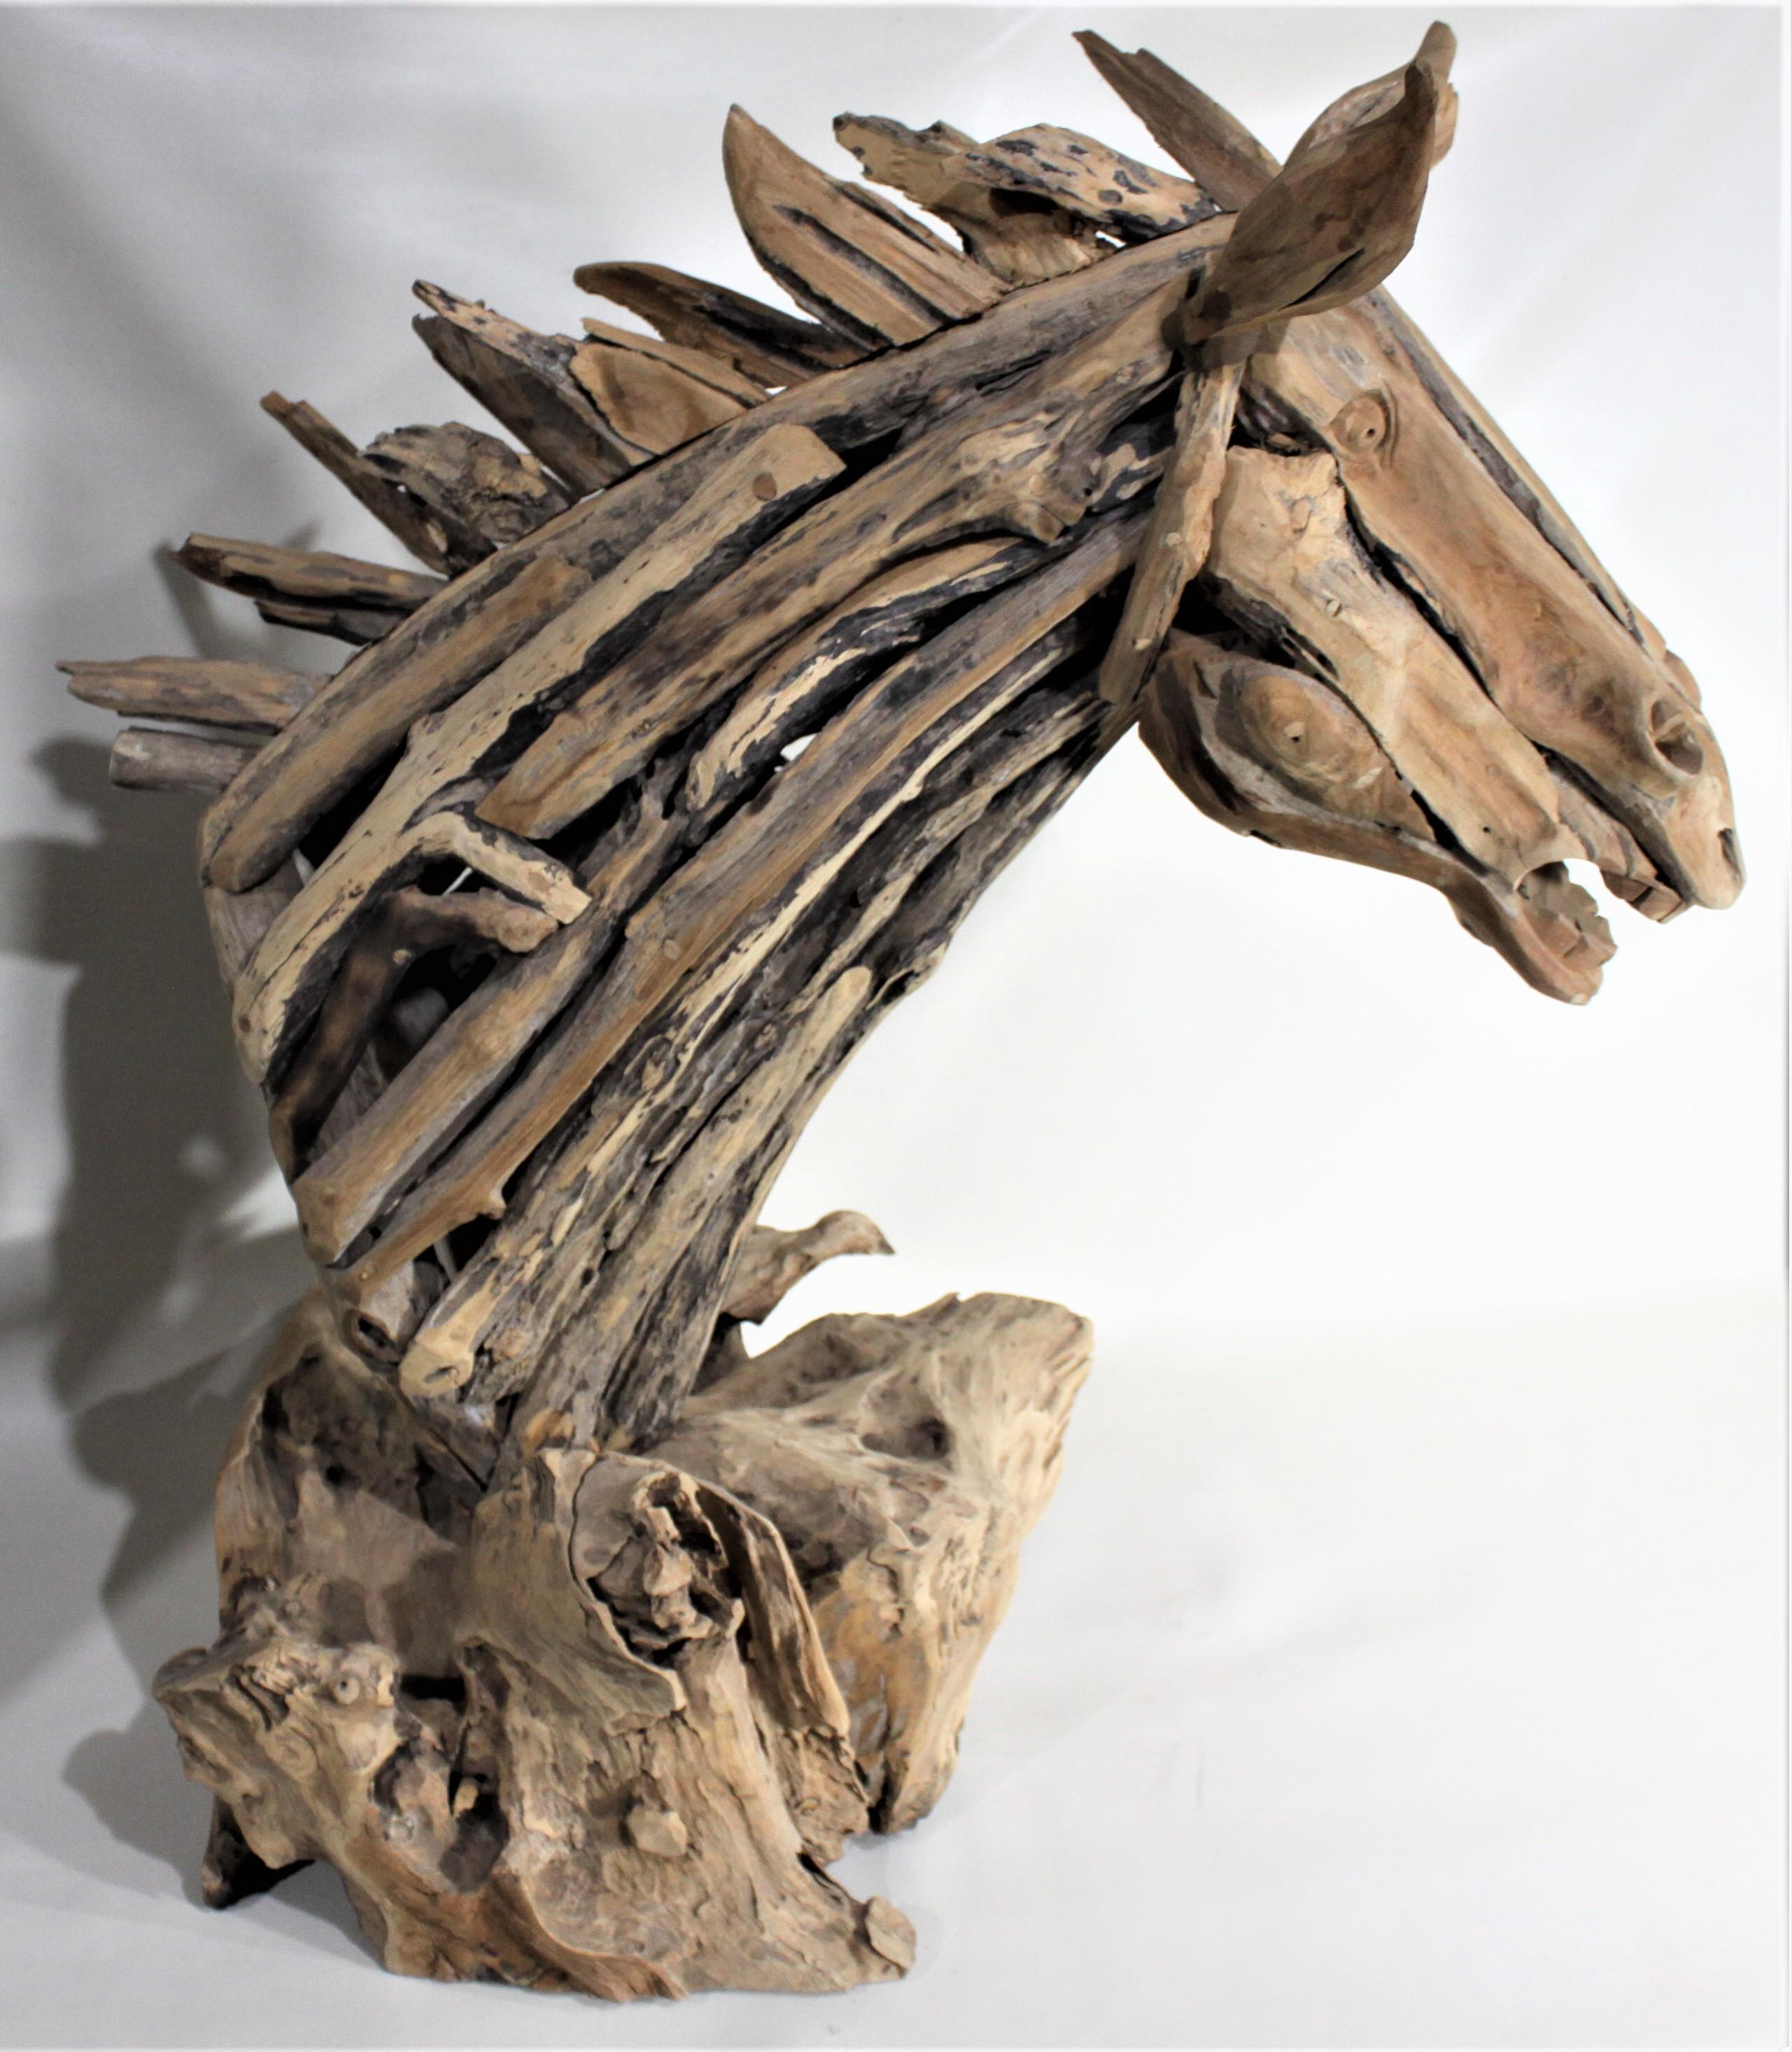 Cette grande et importante sculpture d'une tête de cheval n'est pas signée, mais on pense qu'elle a été réalisée au Canada vers 1980. La sculpture est entièrement constituée de morceaux de bois flotté qui ont été coupés, façonnés et ajustés pour